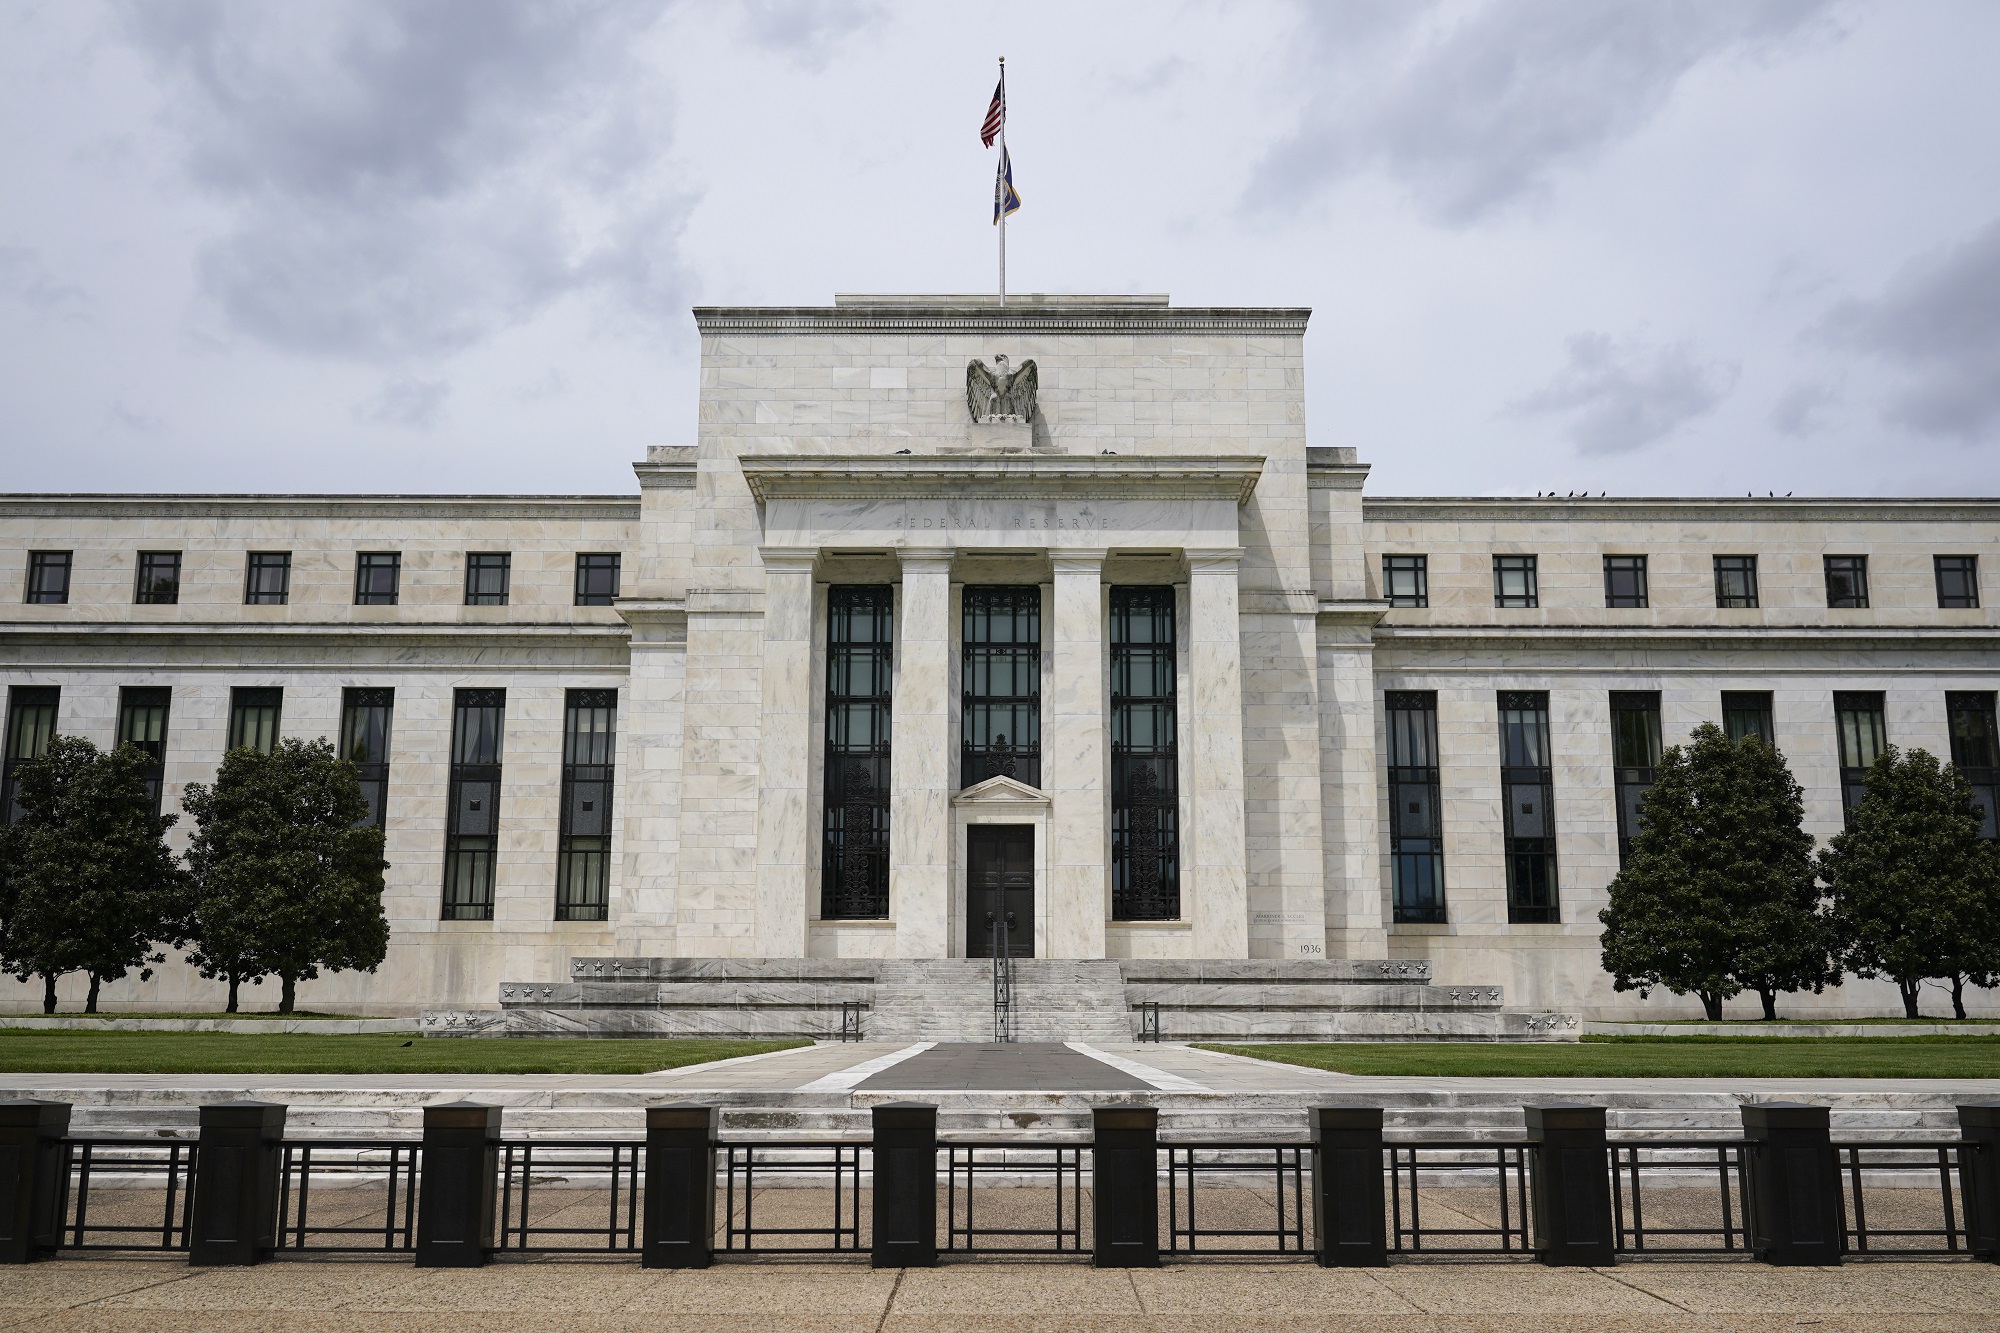 Η Fed διατηρεί αμετάβλητα τα επιτόκια στο εύρος του 5,25% έως 5,50%